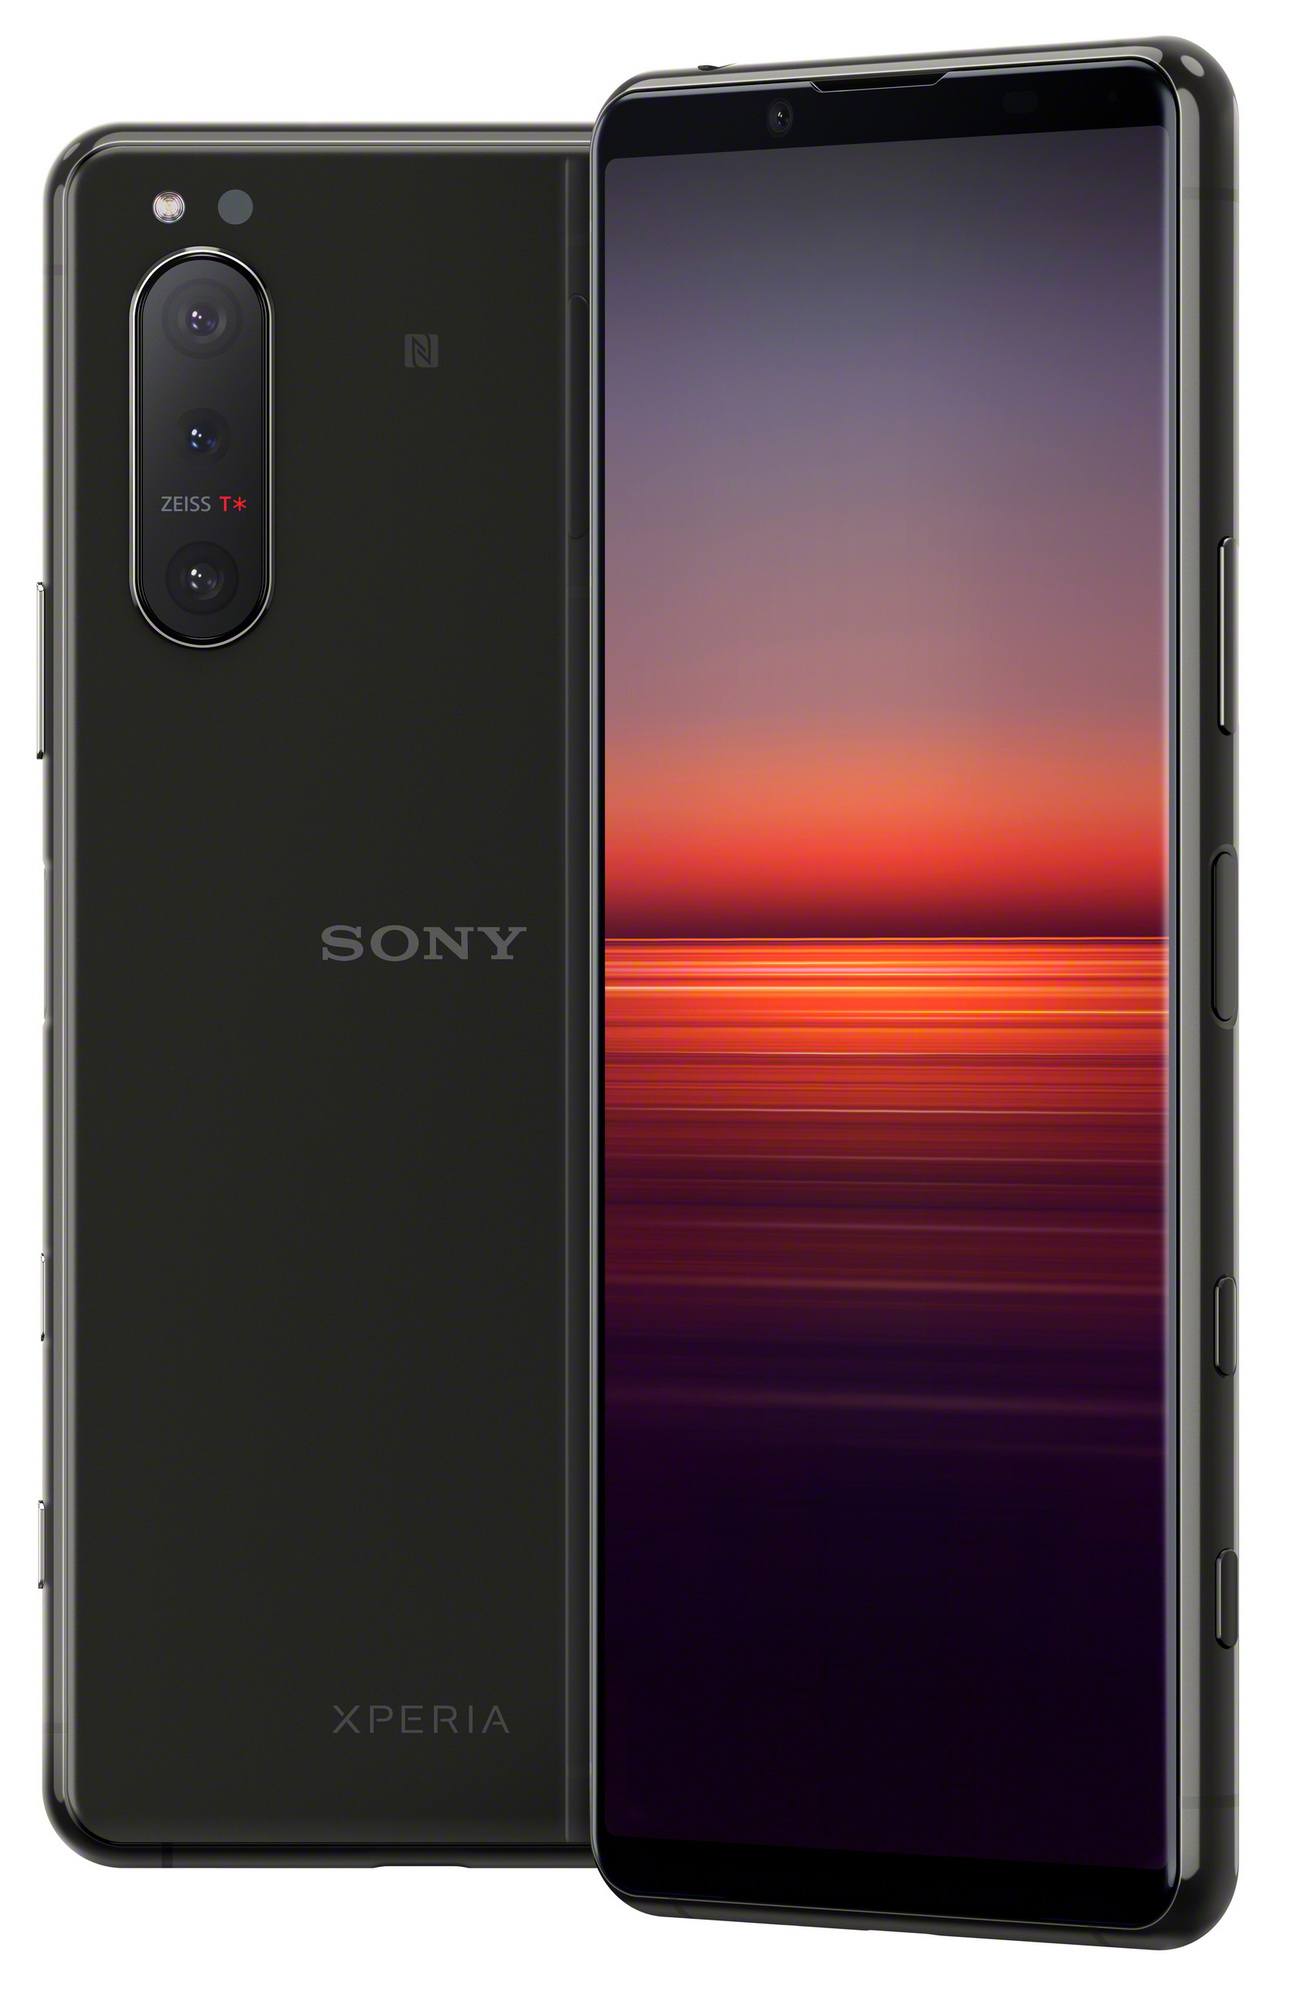  Пресс-фото Sony Xperia 5 II еще в 2х вариантах расцветки Другие устройства  - sony_xperia_5_ii_esche_v_dvuh_rascvetkah_1